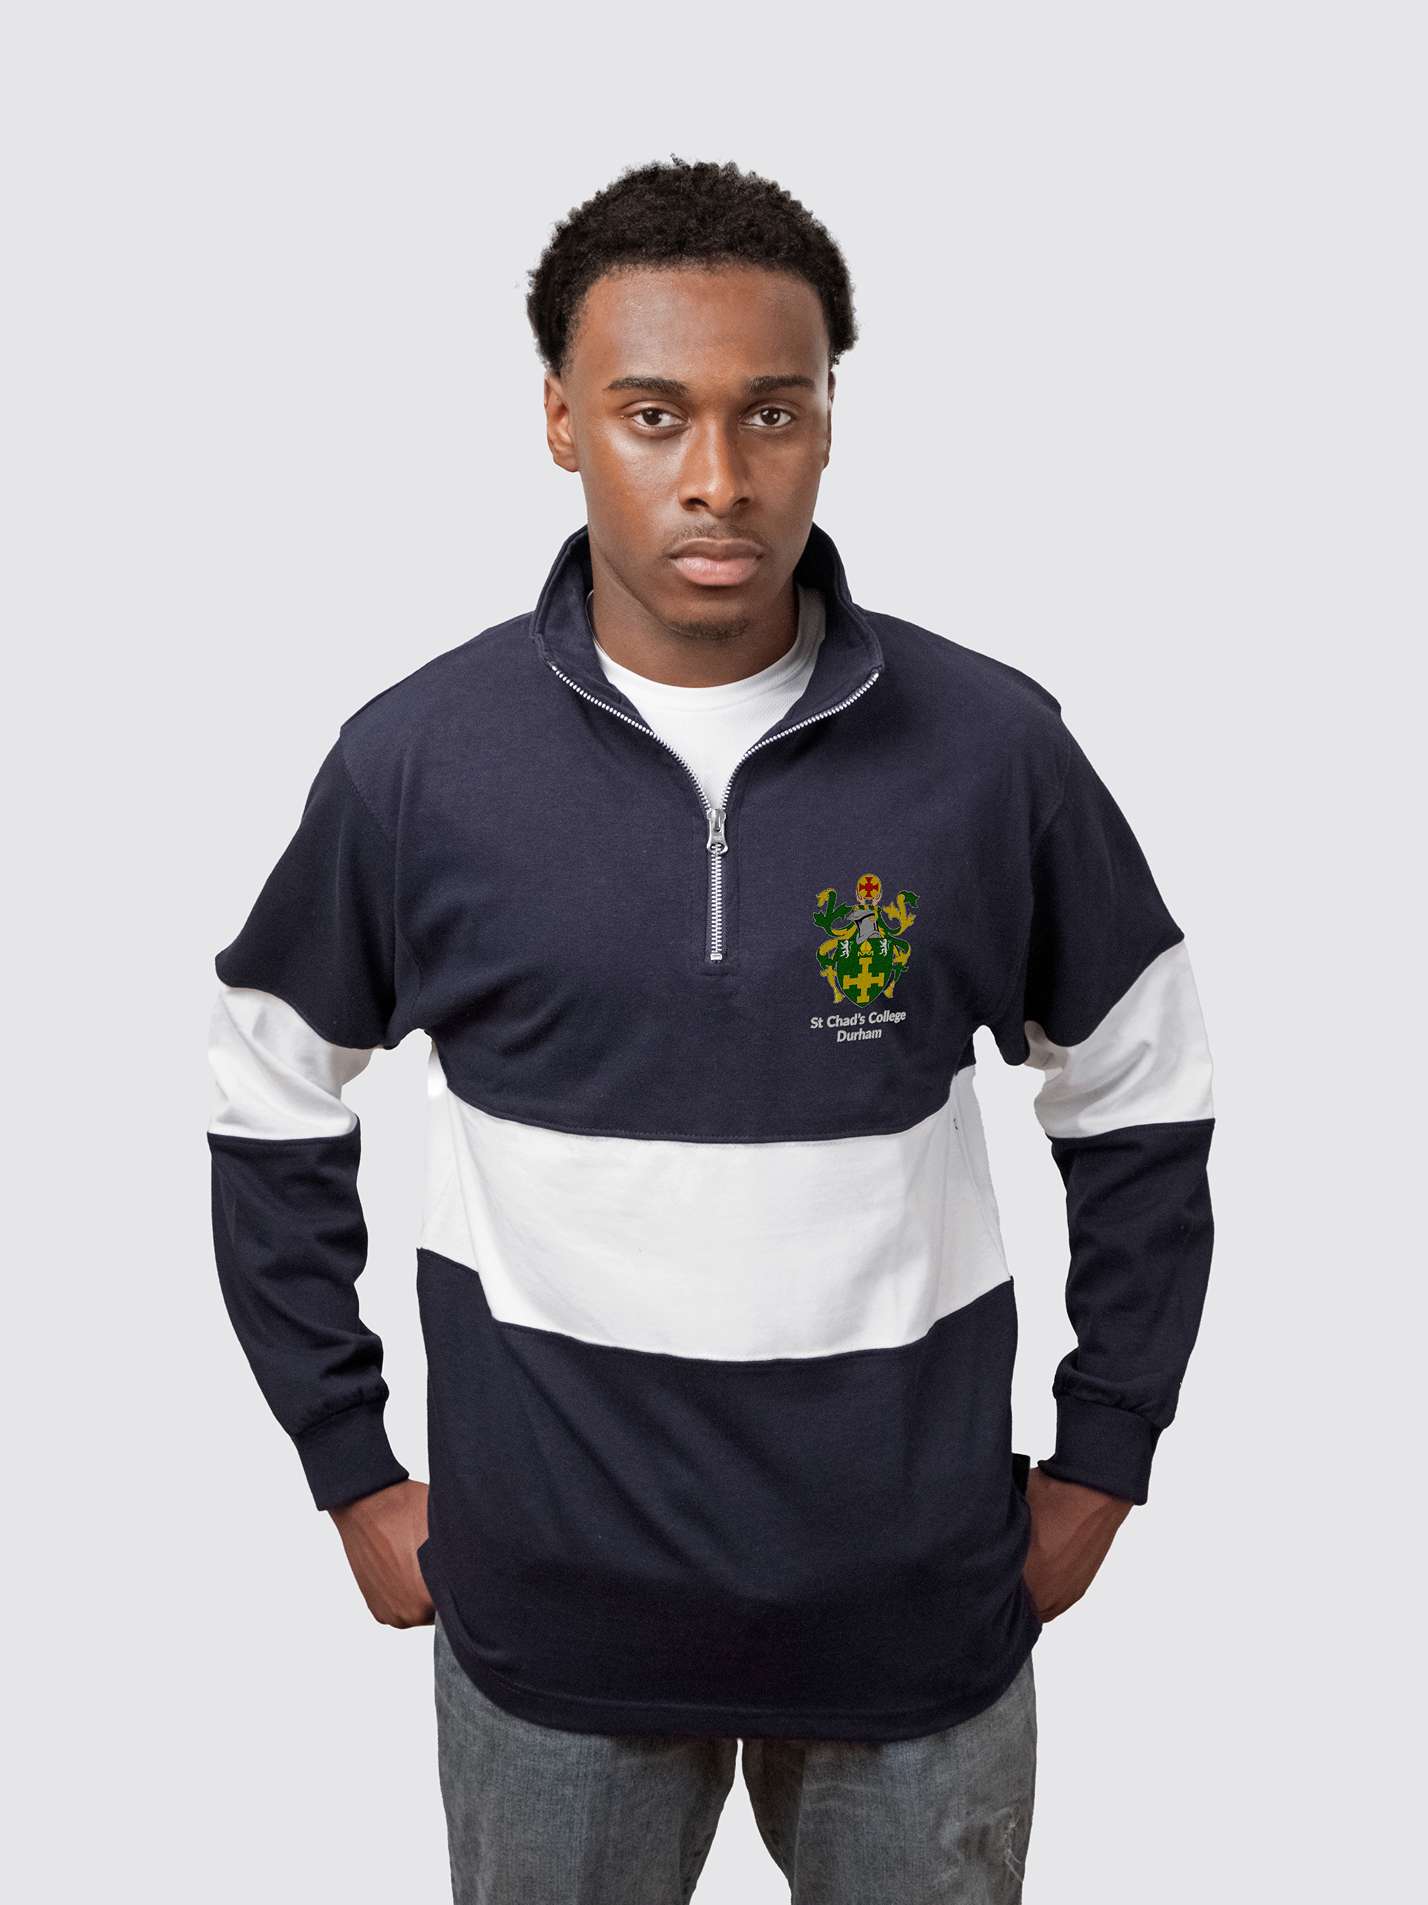 St Chad's College Durham MCR Unisex Panelled 1/4 Zip Sweatshirt